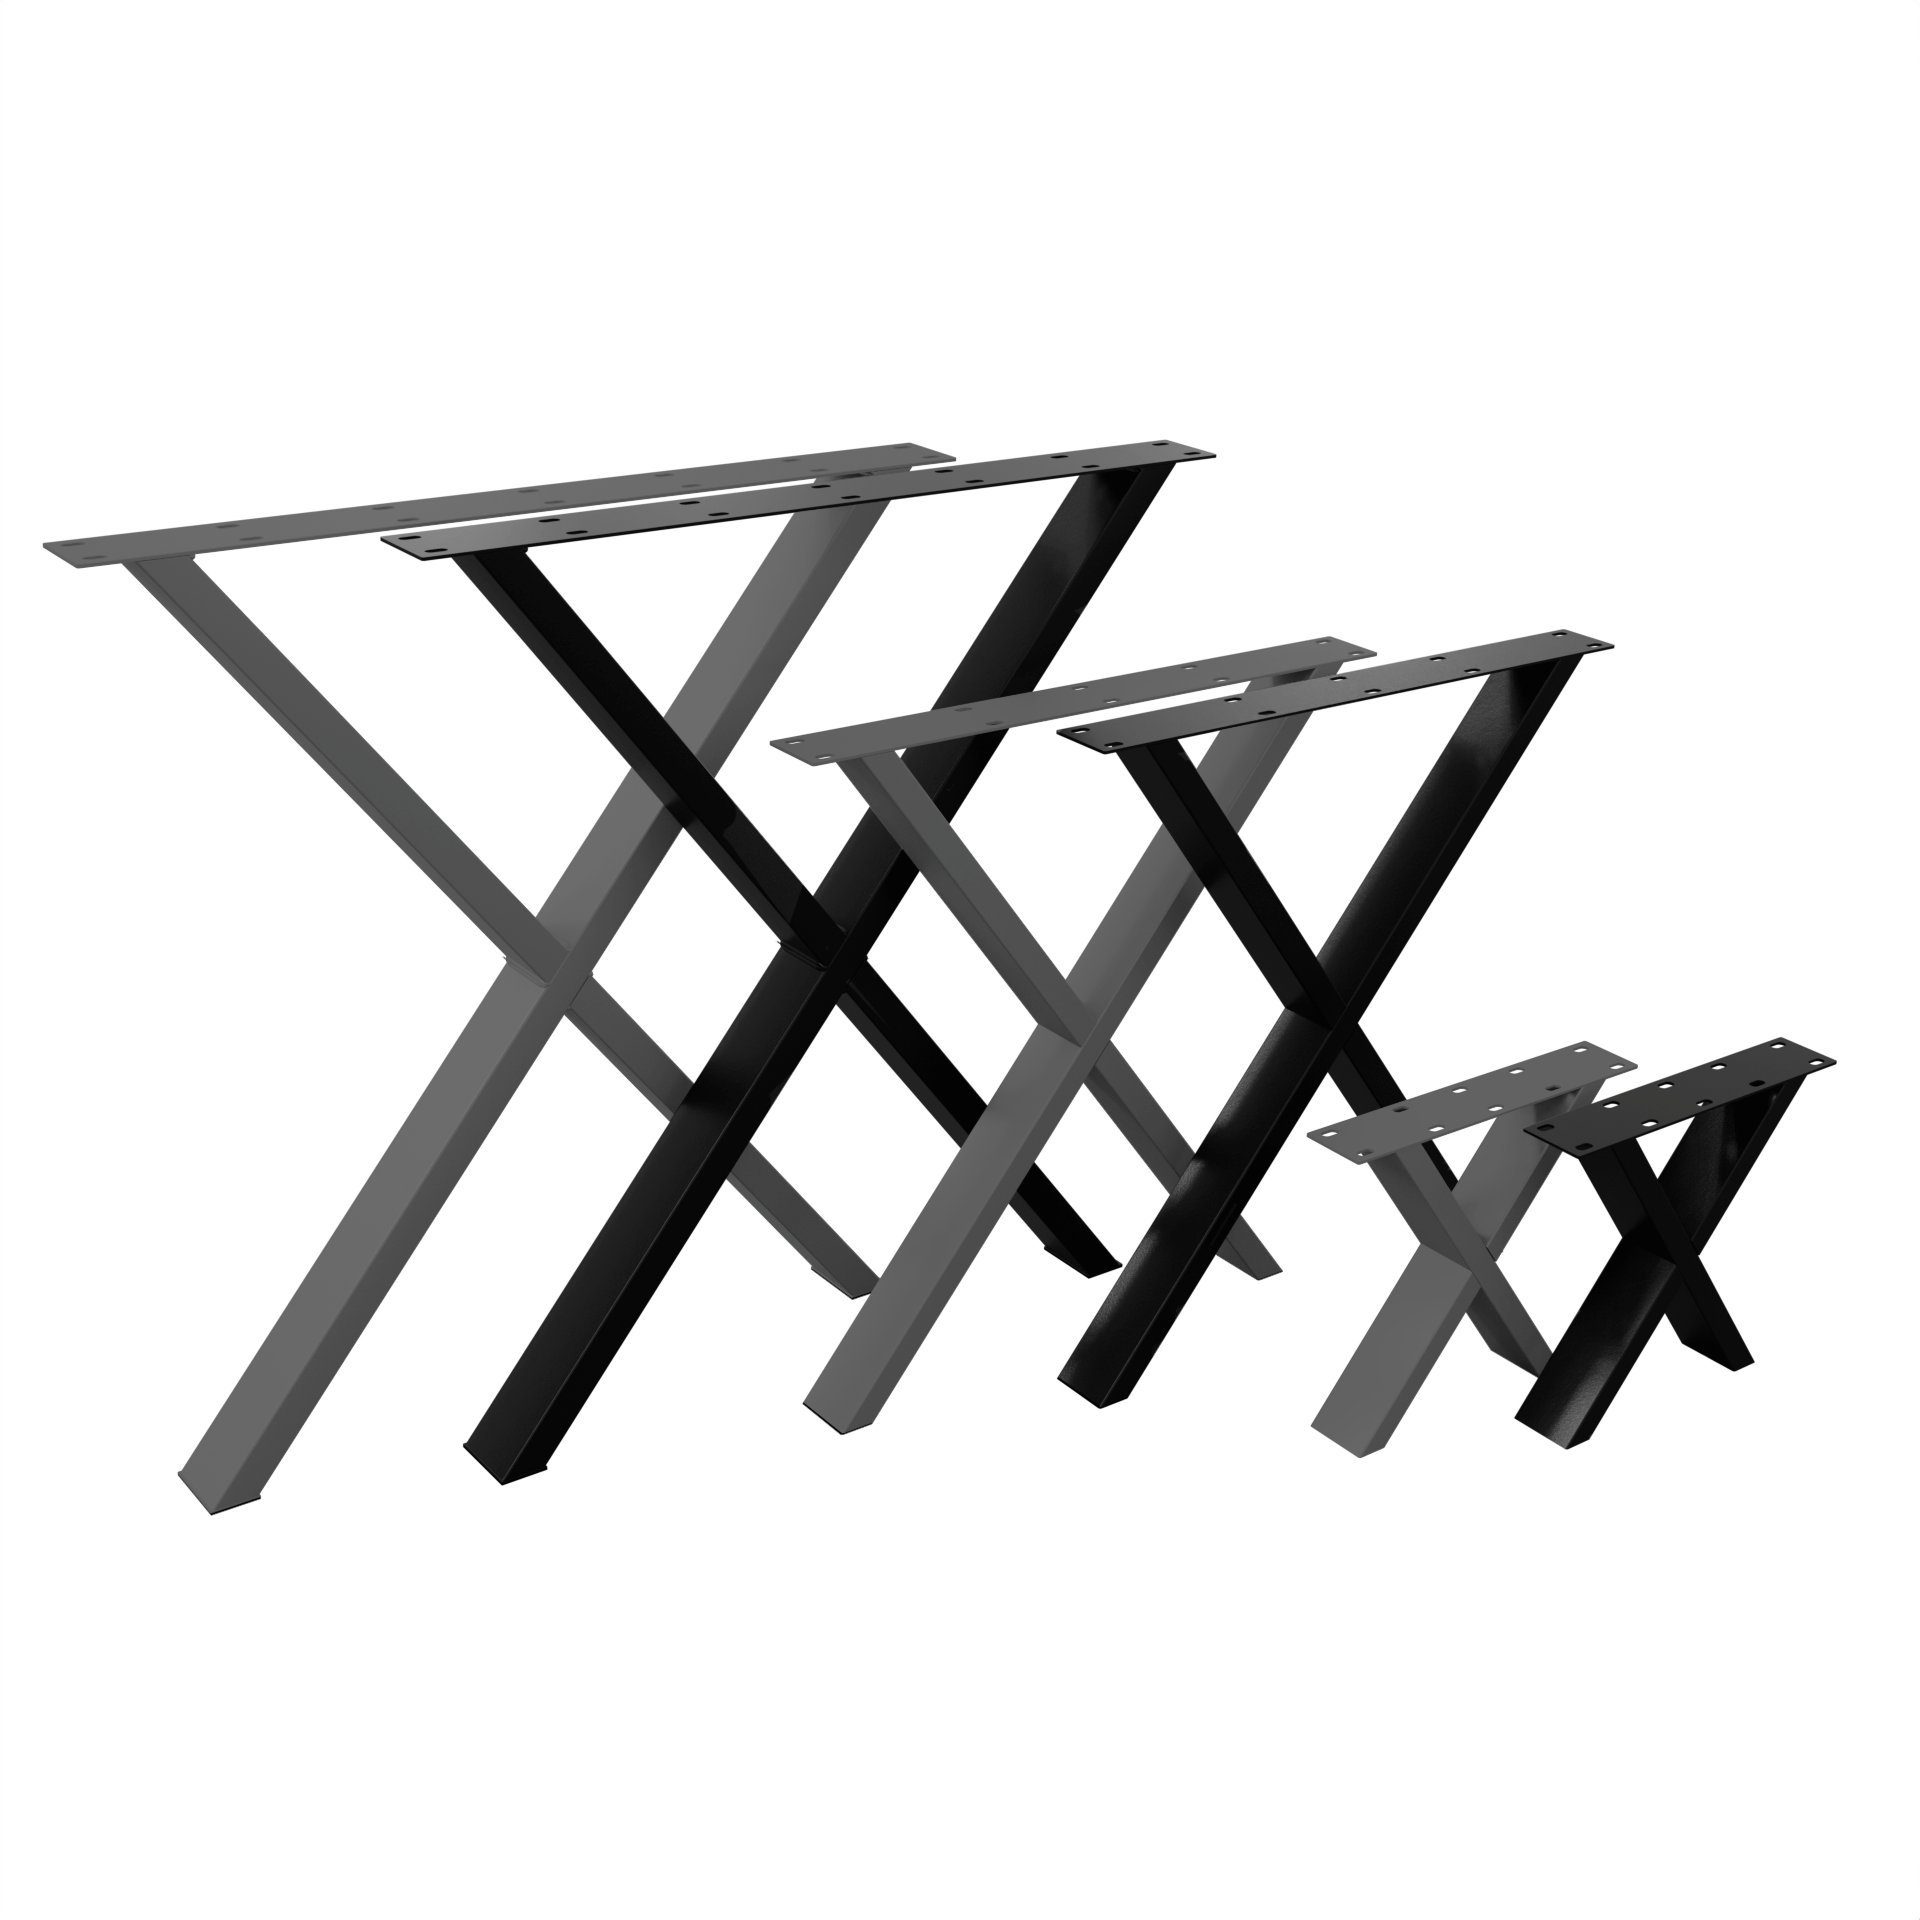 NOGGI - Home Decor Masters - Dein X- Projekt Tischkufen Möbelkufen I Tischbein 2 Form, - anthrazit für Sitzbank 30x40cm DIY-Home